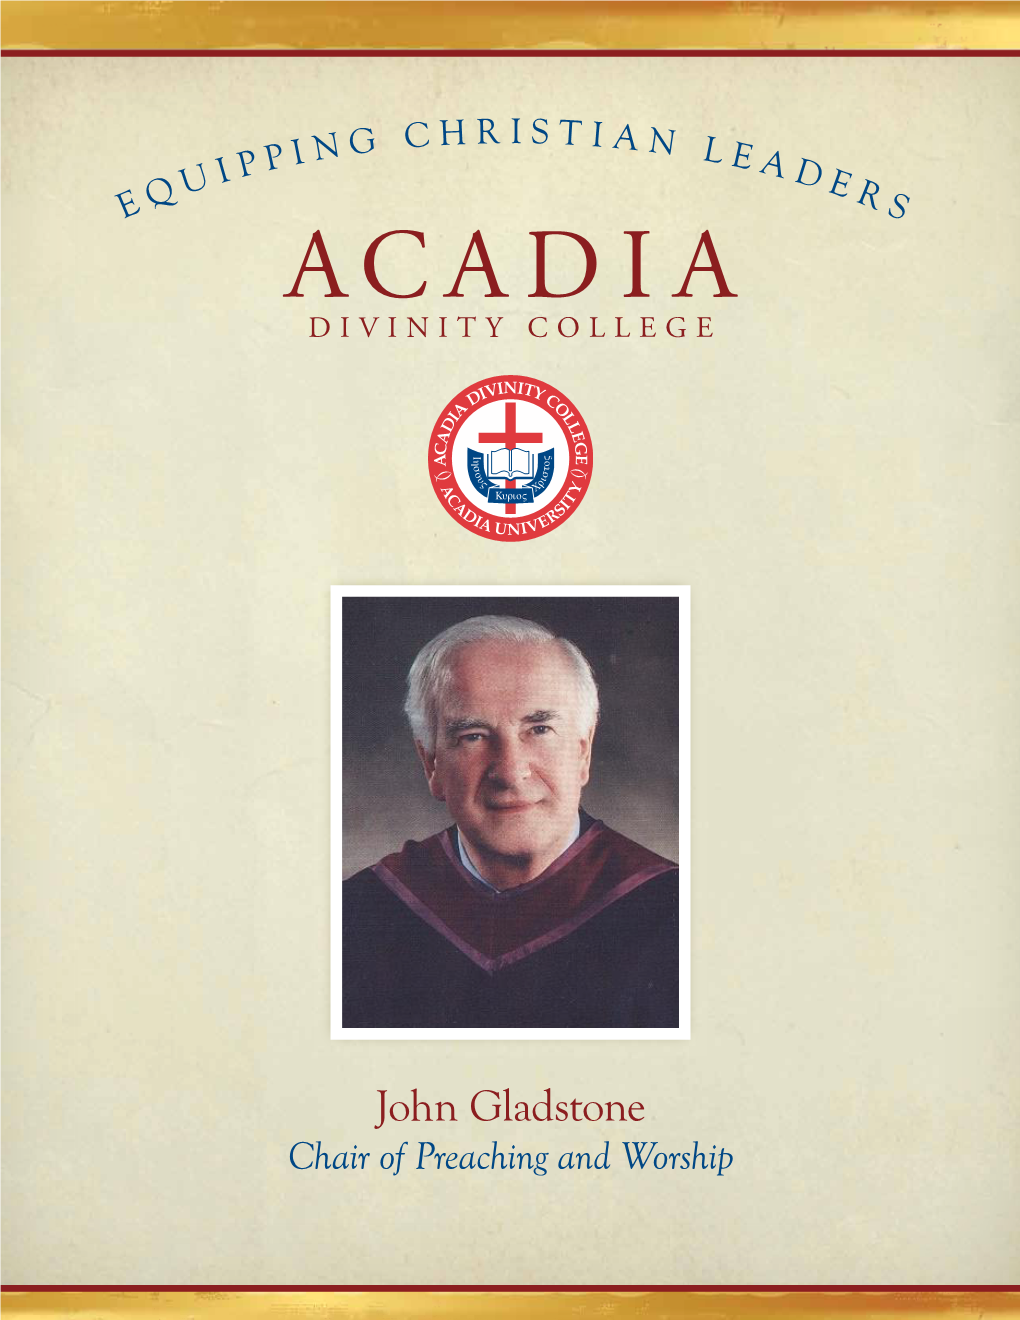 Rev. Dr. John Gladstone